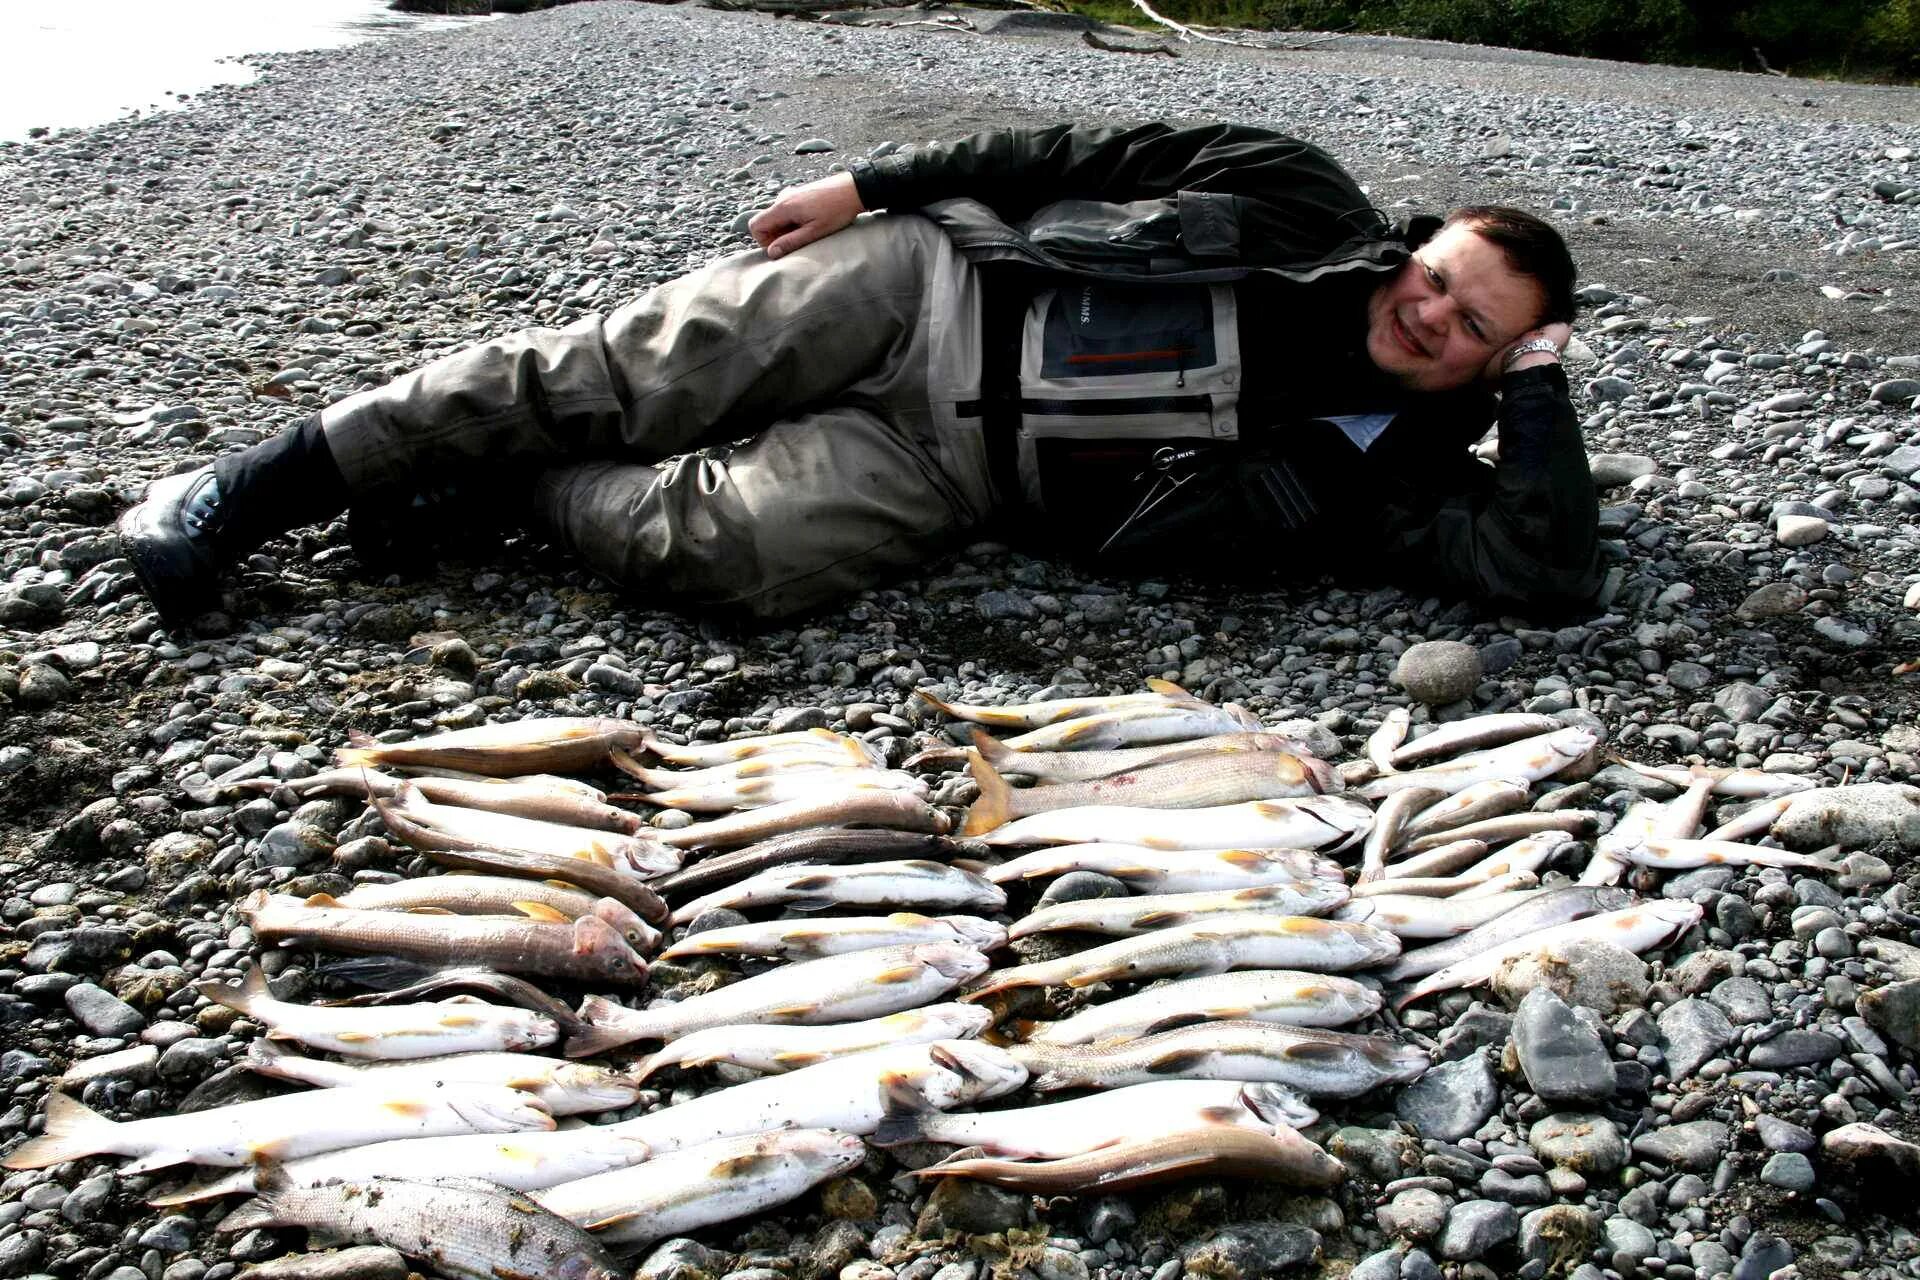 Где добыть рыбу. Петропавловск-Камчатский рыбалка. Рыбалка на Камчатке. Охота и рыболовство. Рыба Камчатки.